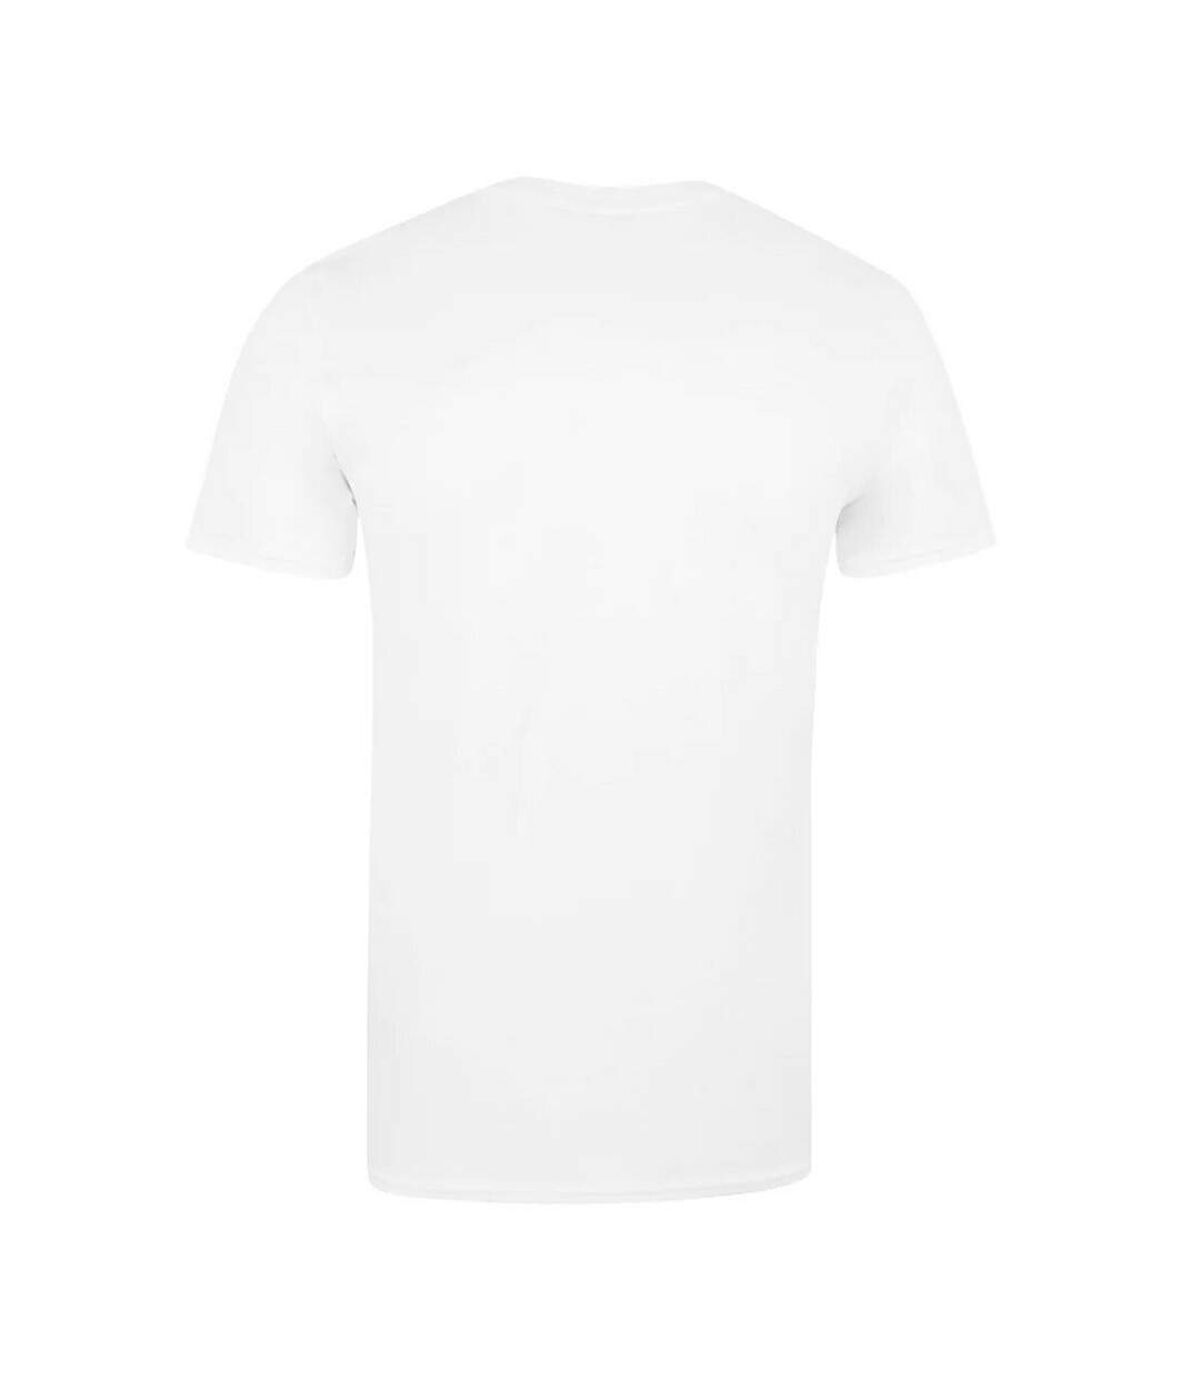 Marvel - T-shirt - Homme (Blanc) - UTTV615